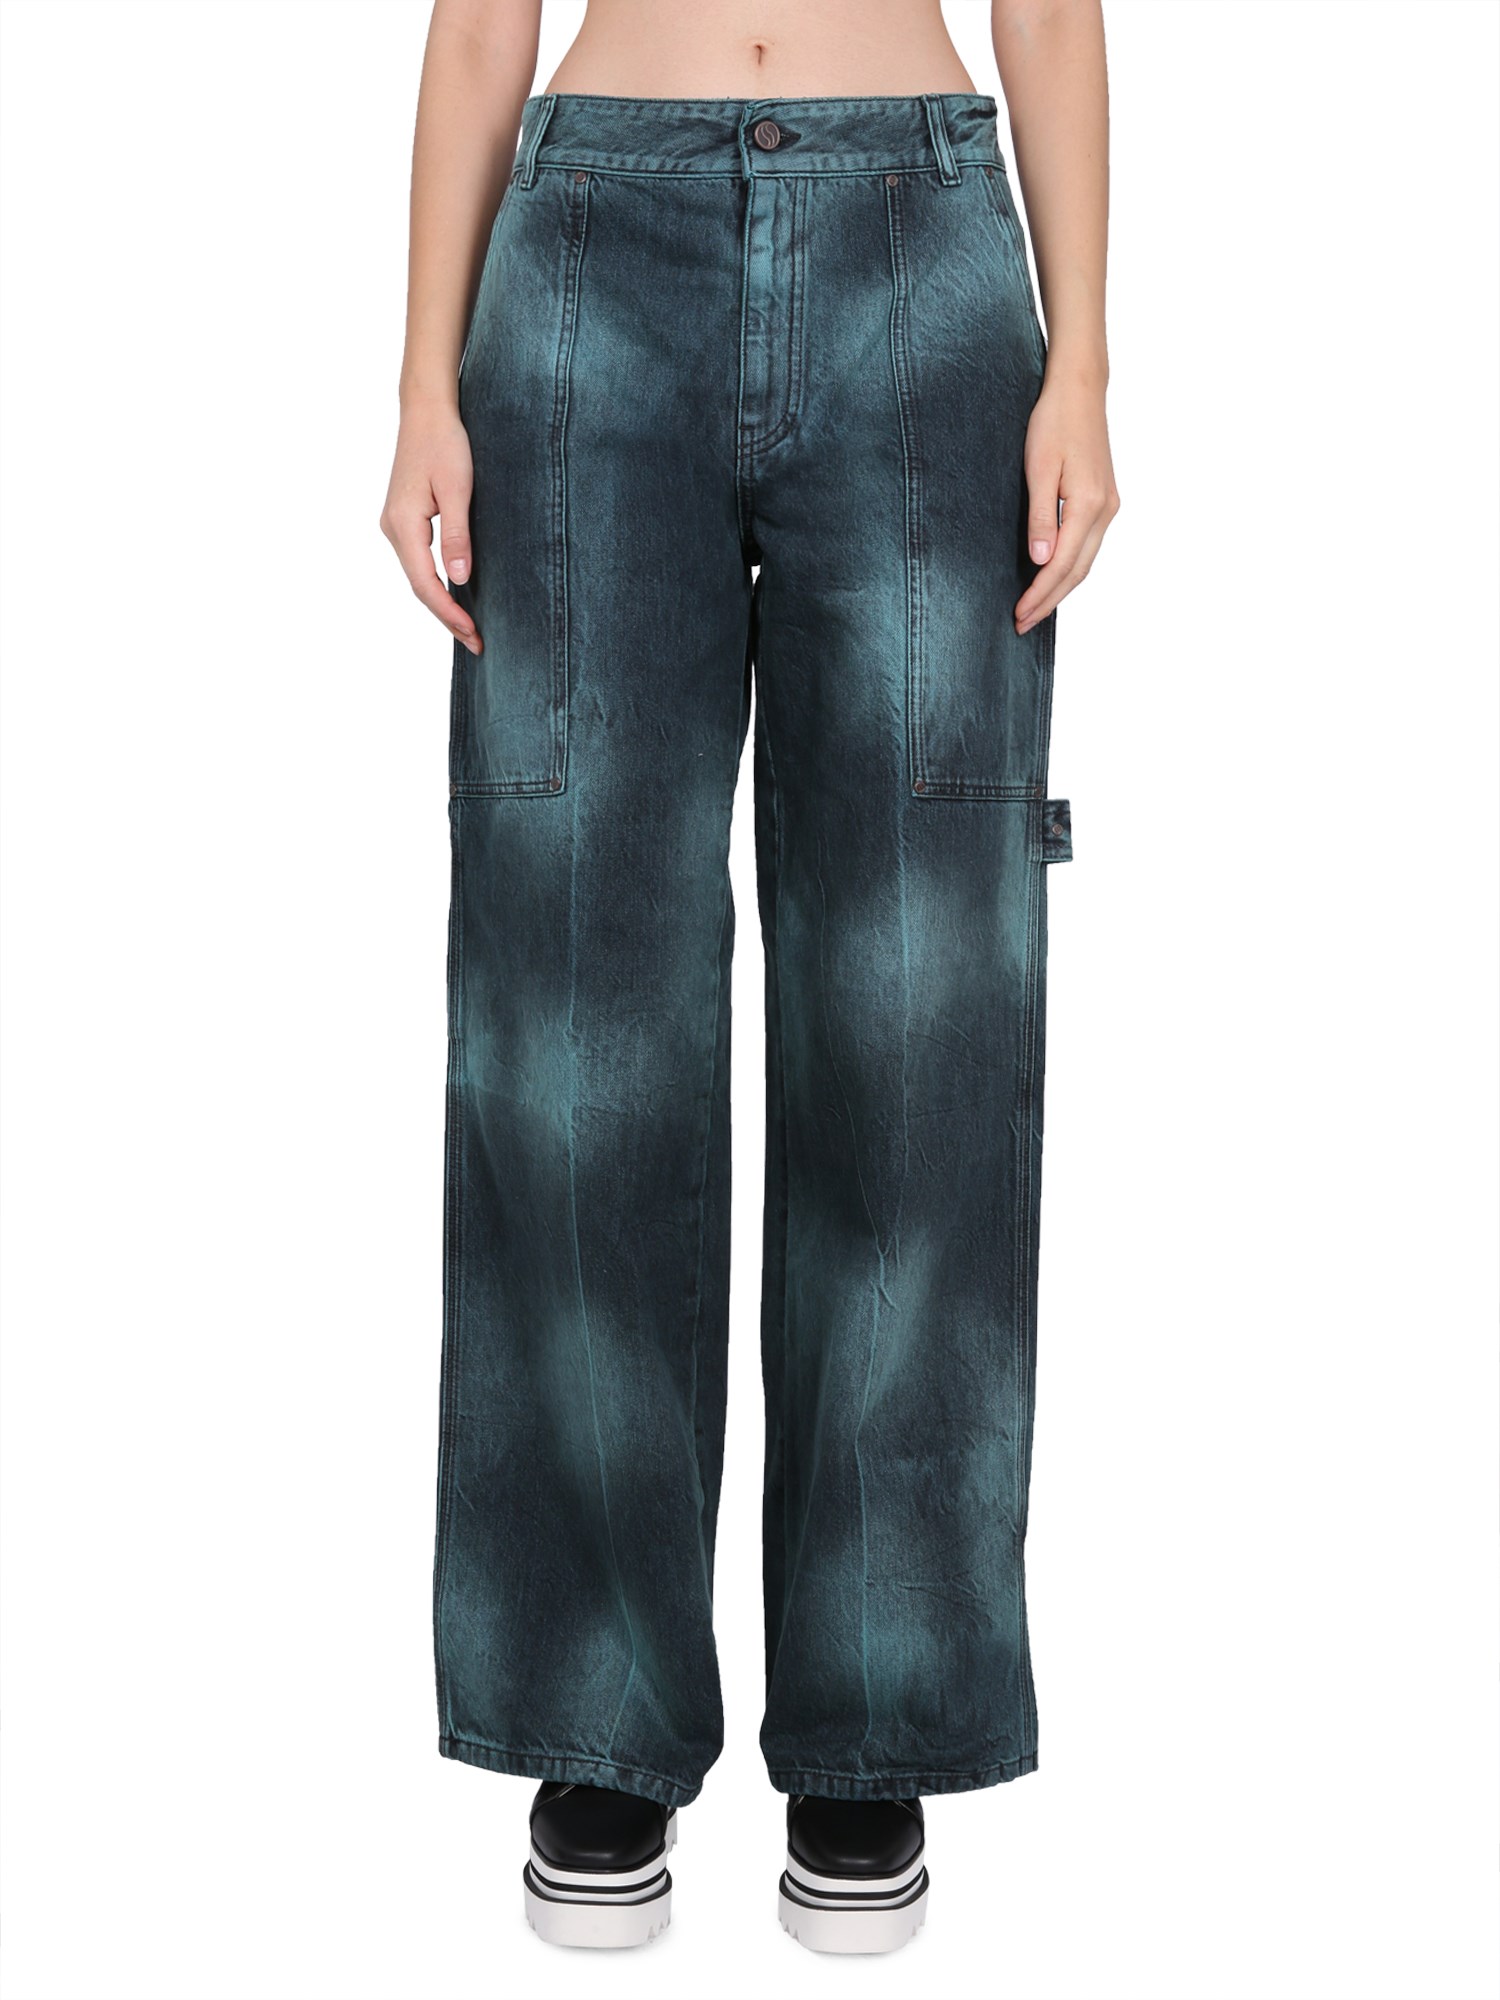 Stella McCartney Tie-Dye Workwear Wide Leg Jeans